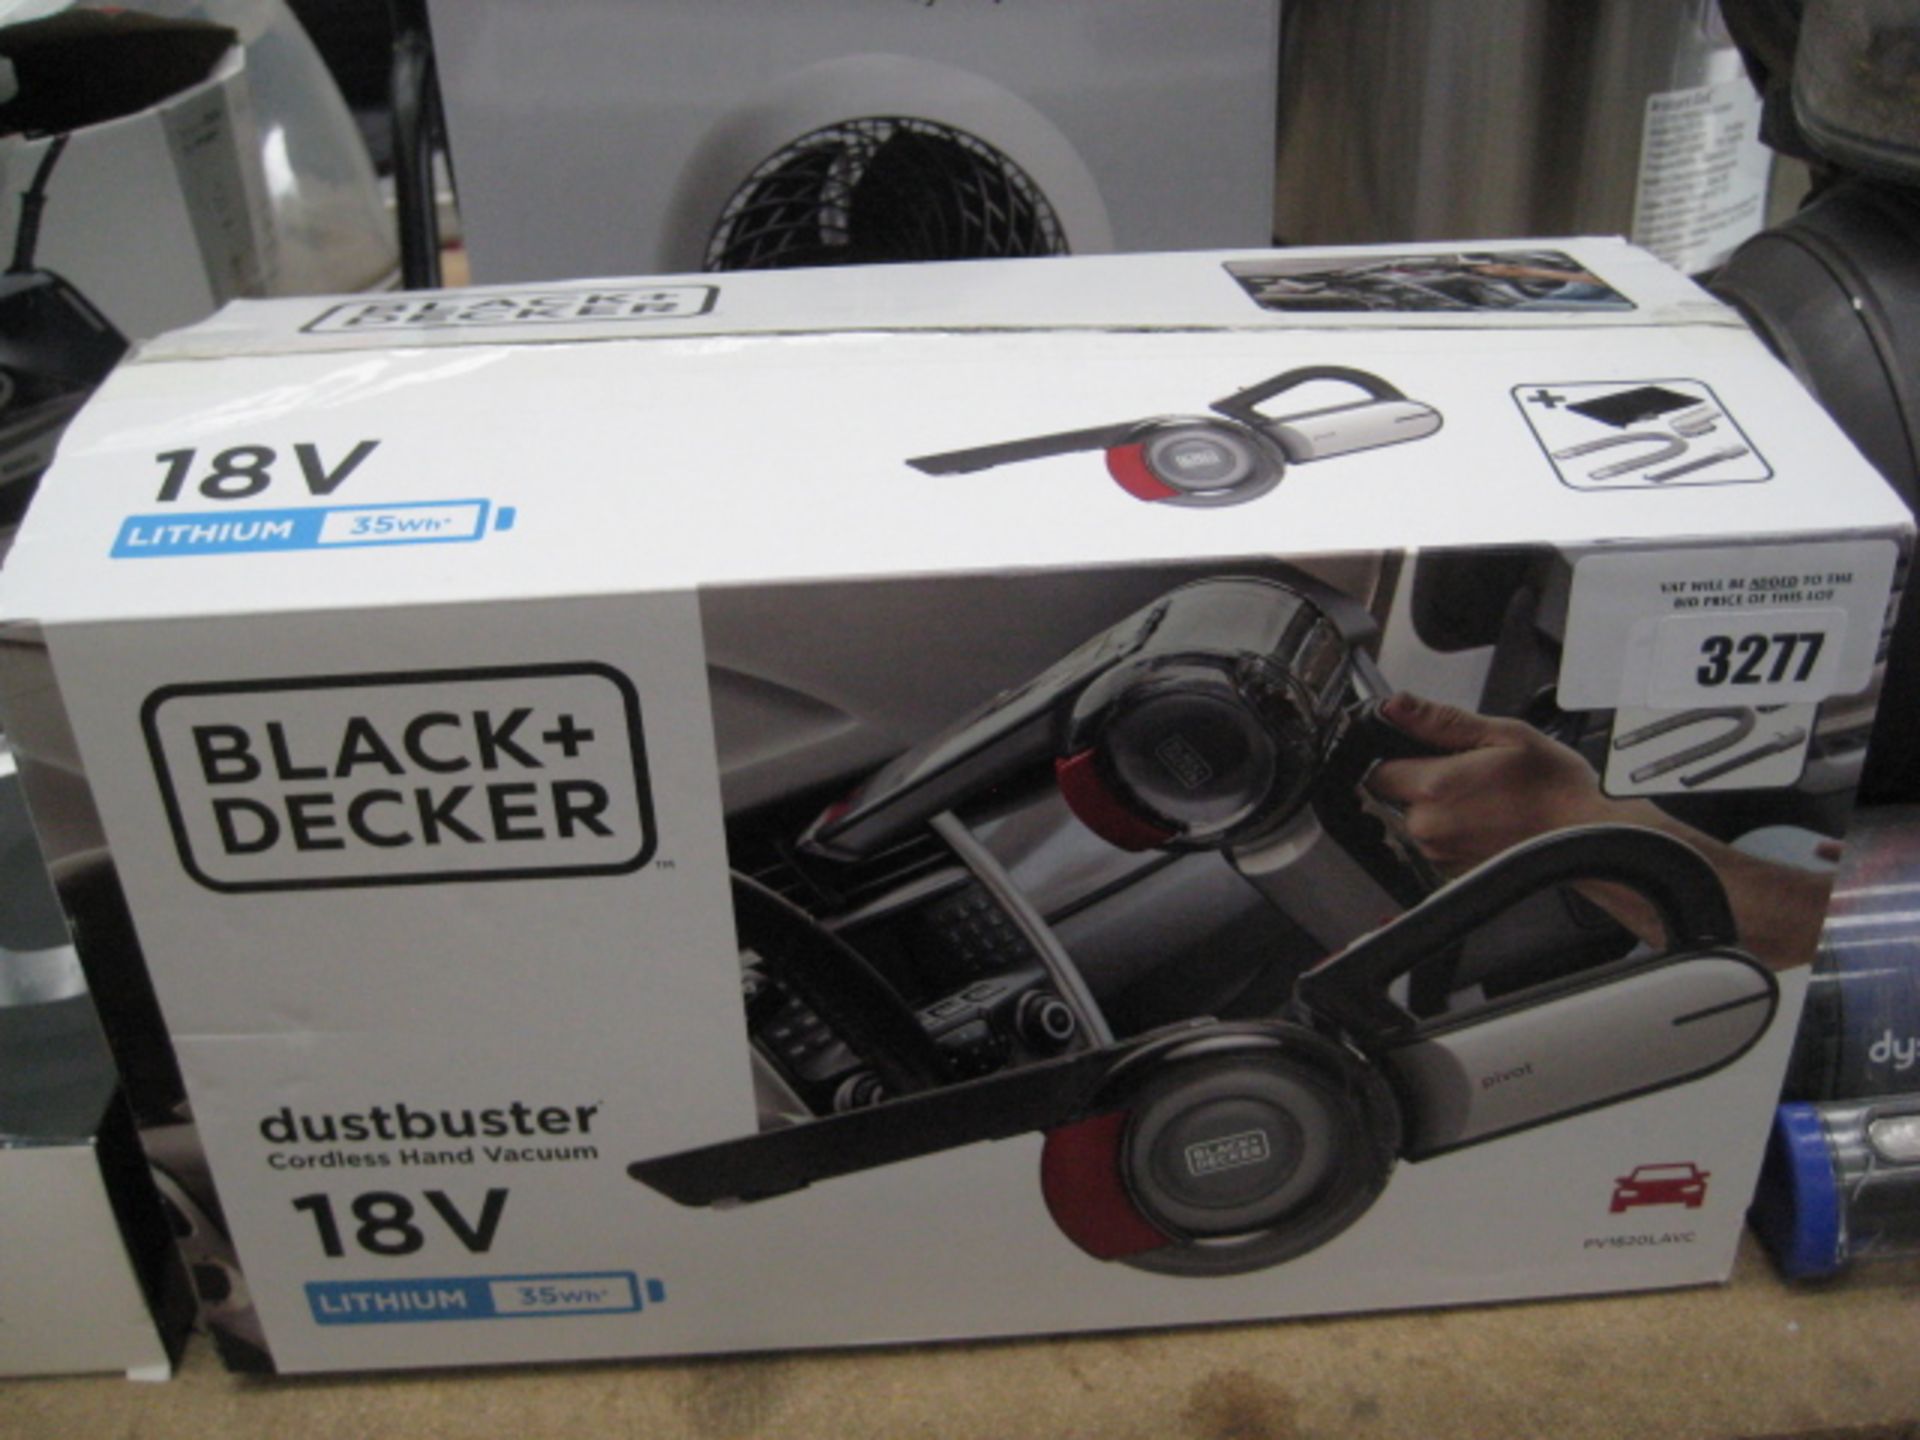 Black & Decker dustbuster